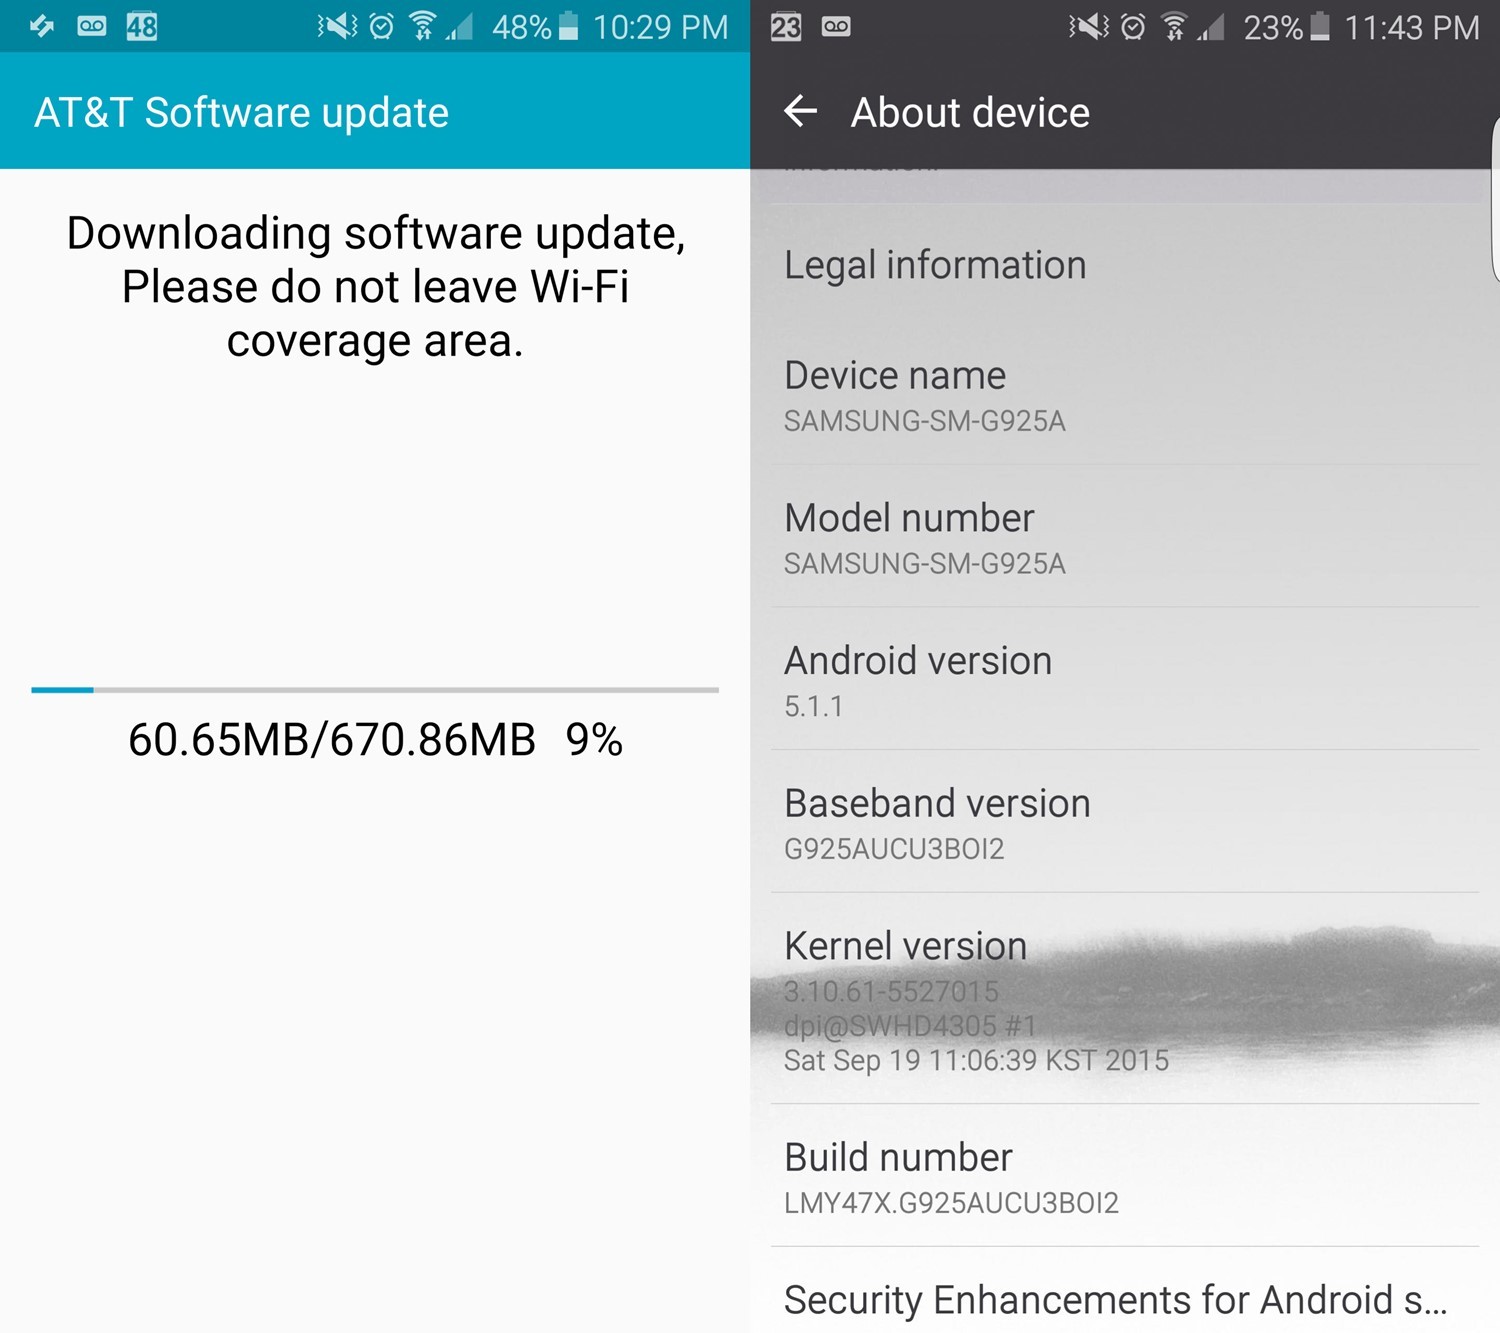 La actualización de AT&T Galaxy S6 Edge Android 5.1.1 (G925AUCU3BOI2) está disponible, ¡también puede traer soporte para Samsung Pay!